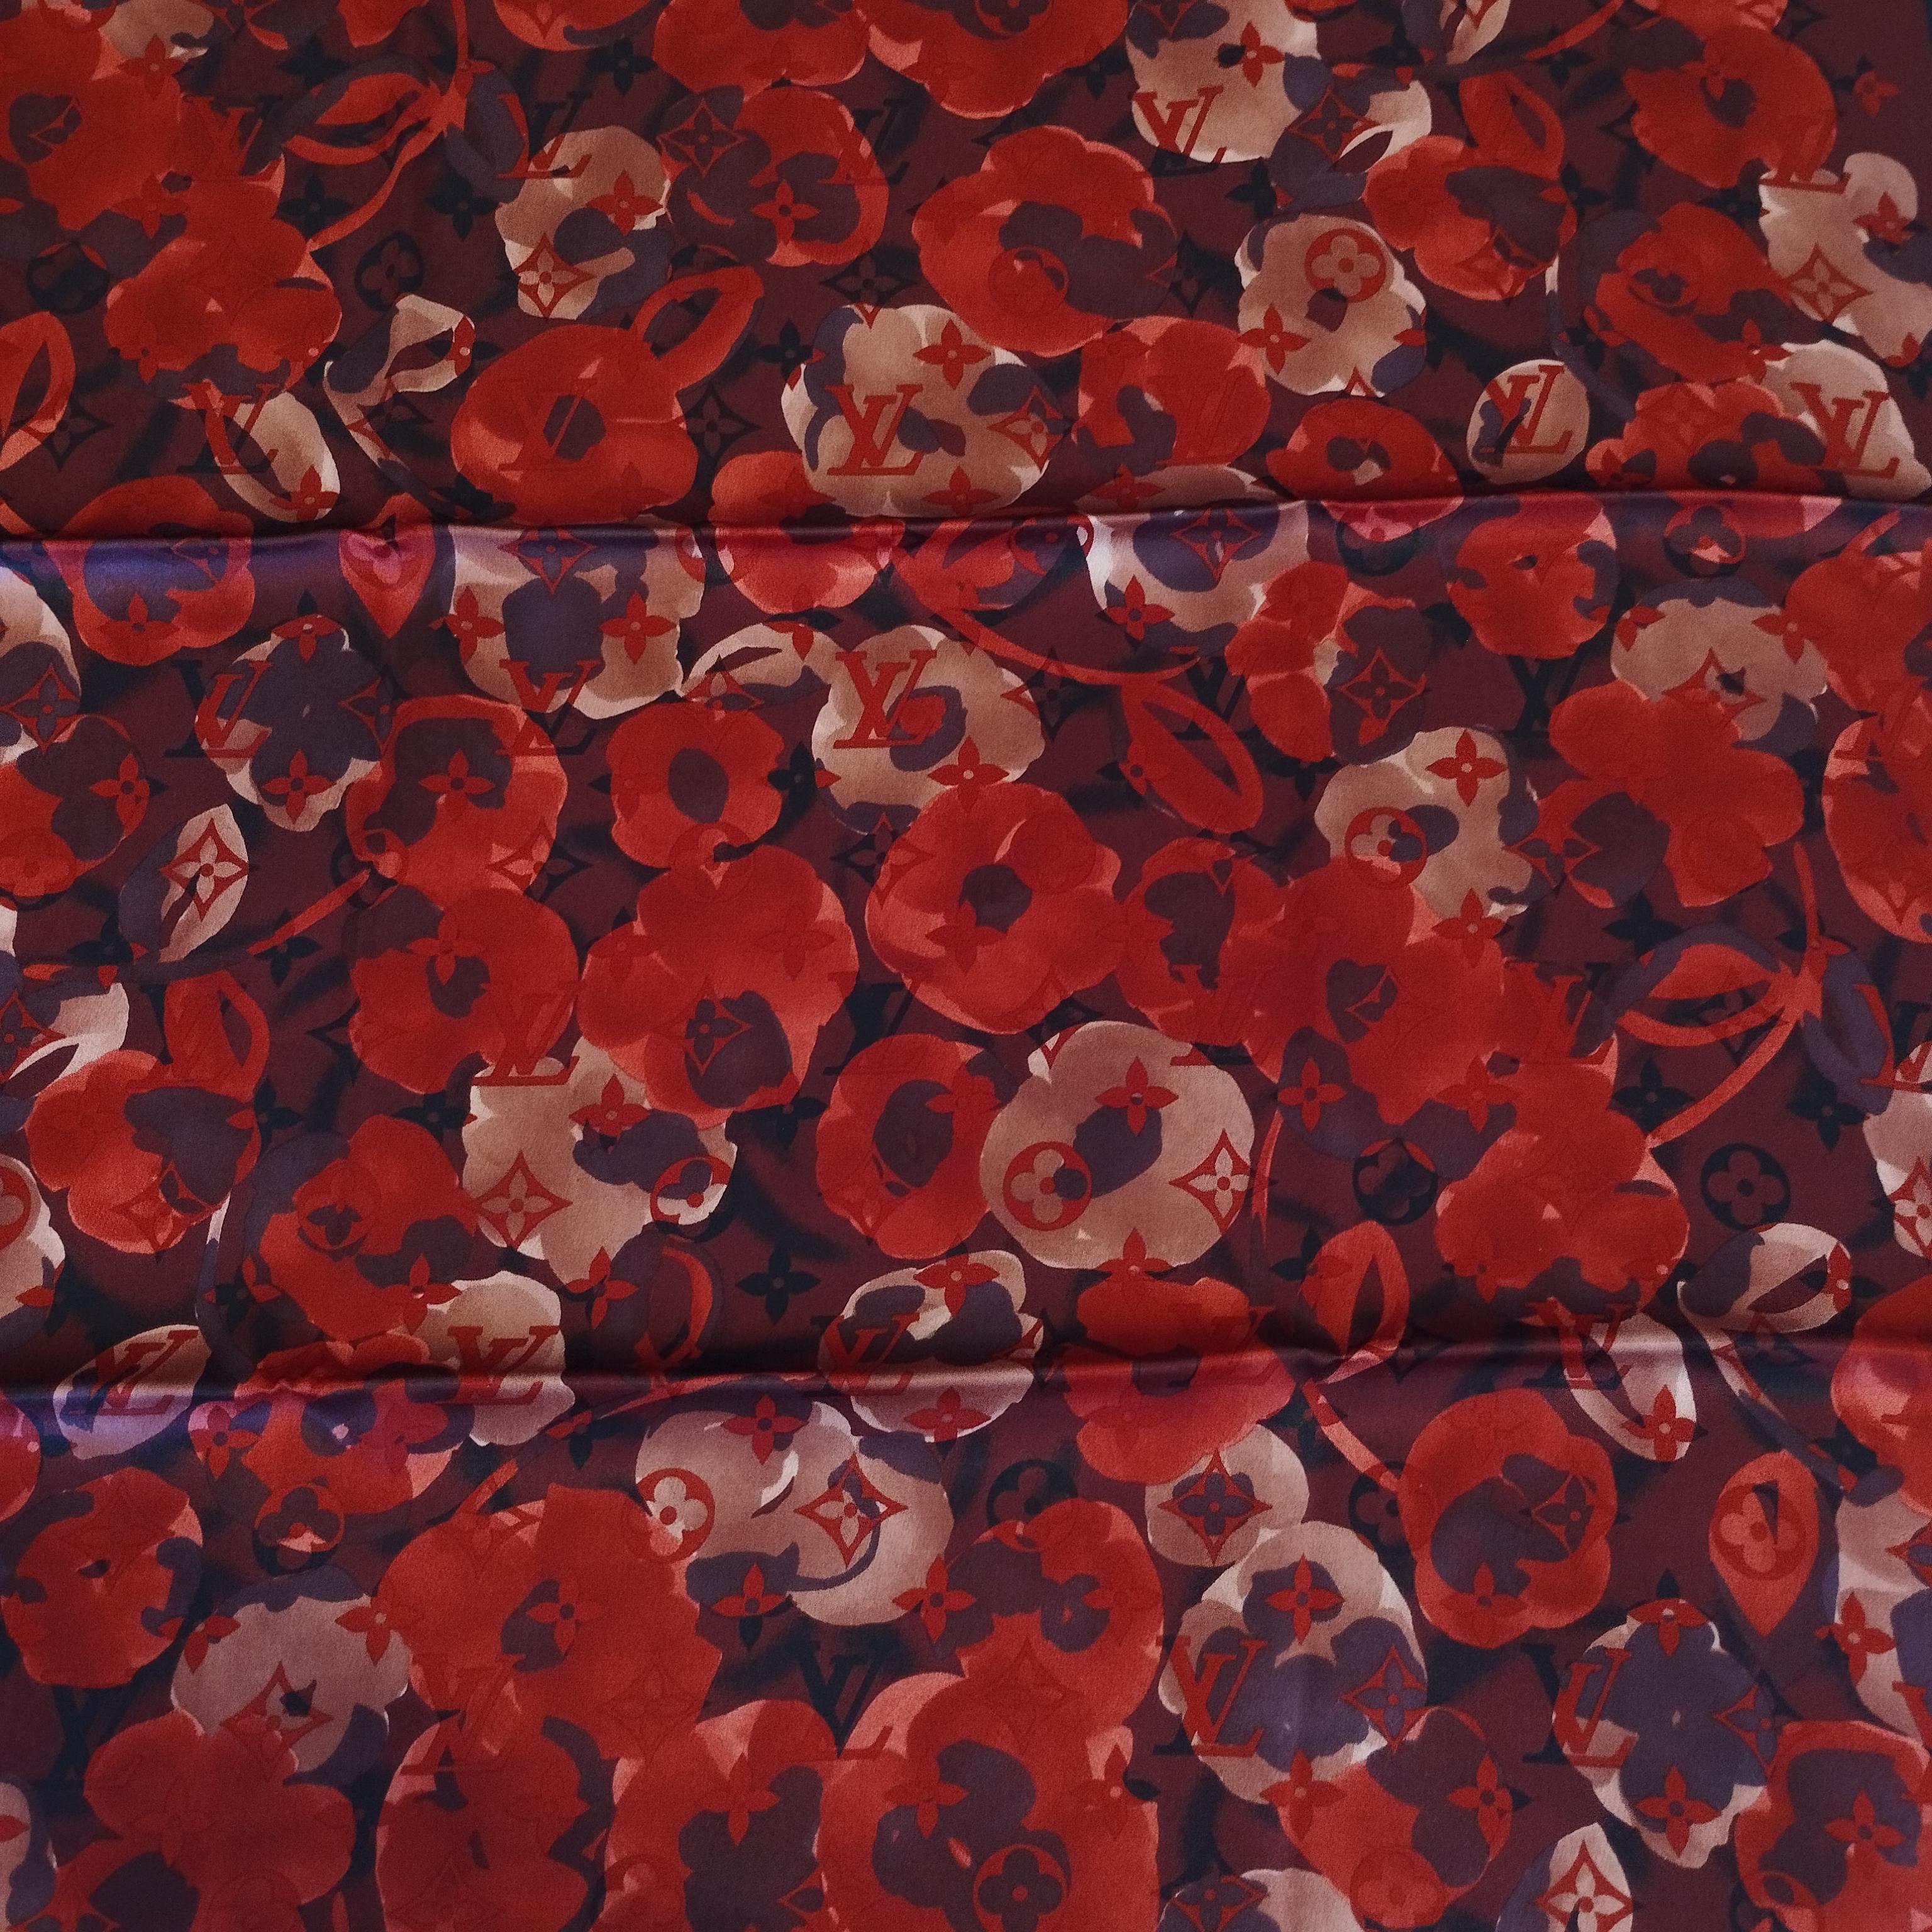 Magnifique et rare foulard Louis Vuitton
Des couleurs étonnantes
100% soie
Motif floral
Couleur rouge et bordeaux
Logo LV
Cm 86 x 88 (33,8 x 34,6 pouces)
Livraison express mondiale incluse dans le prix !